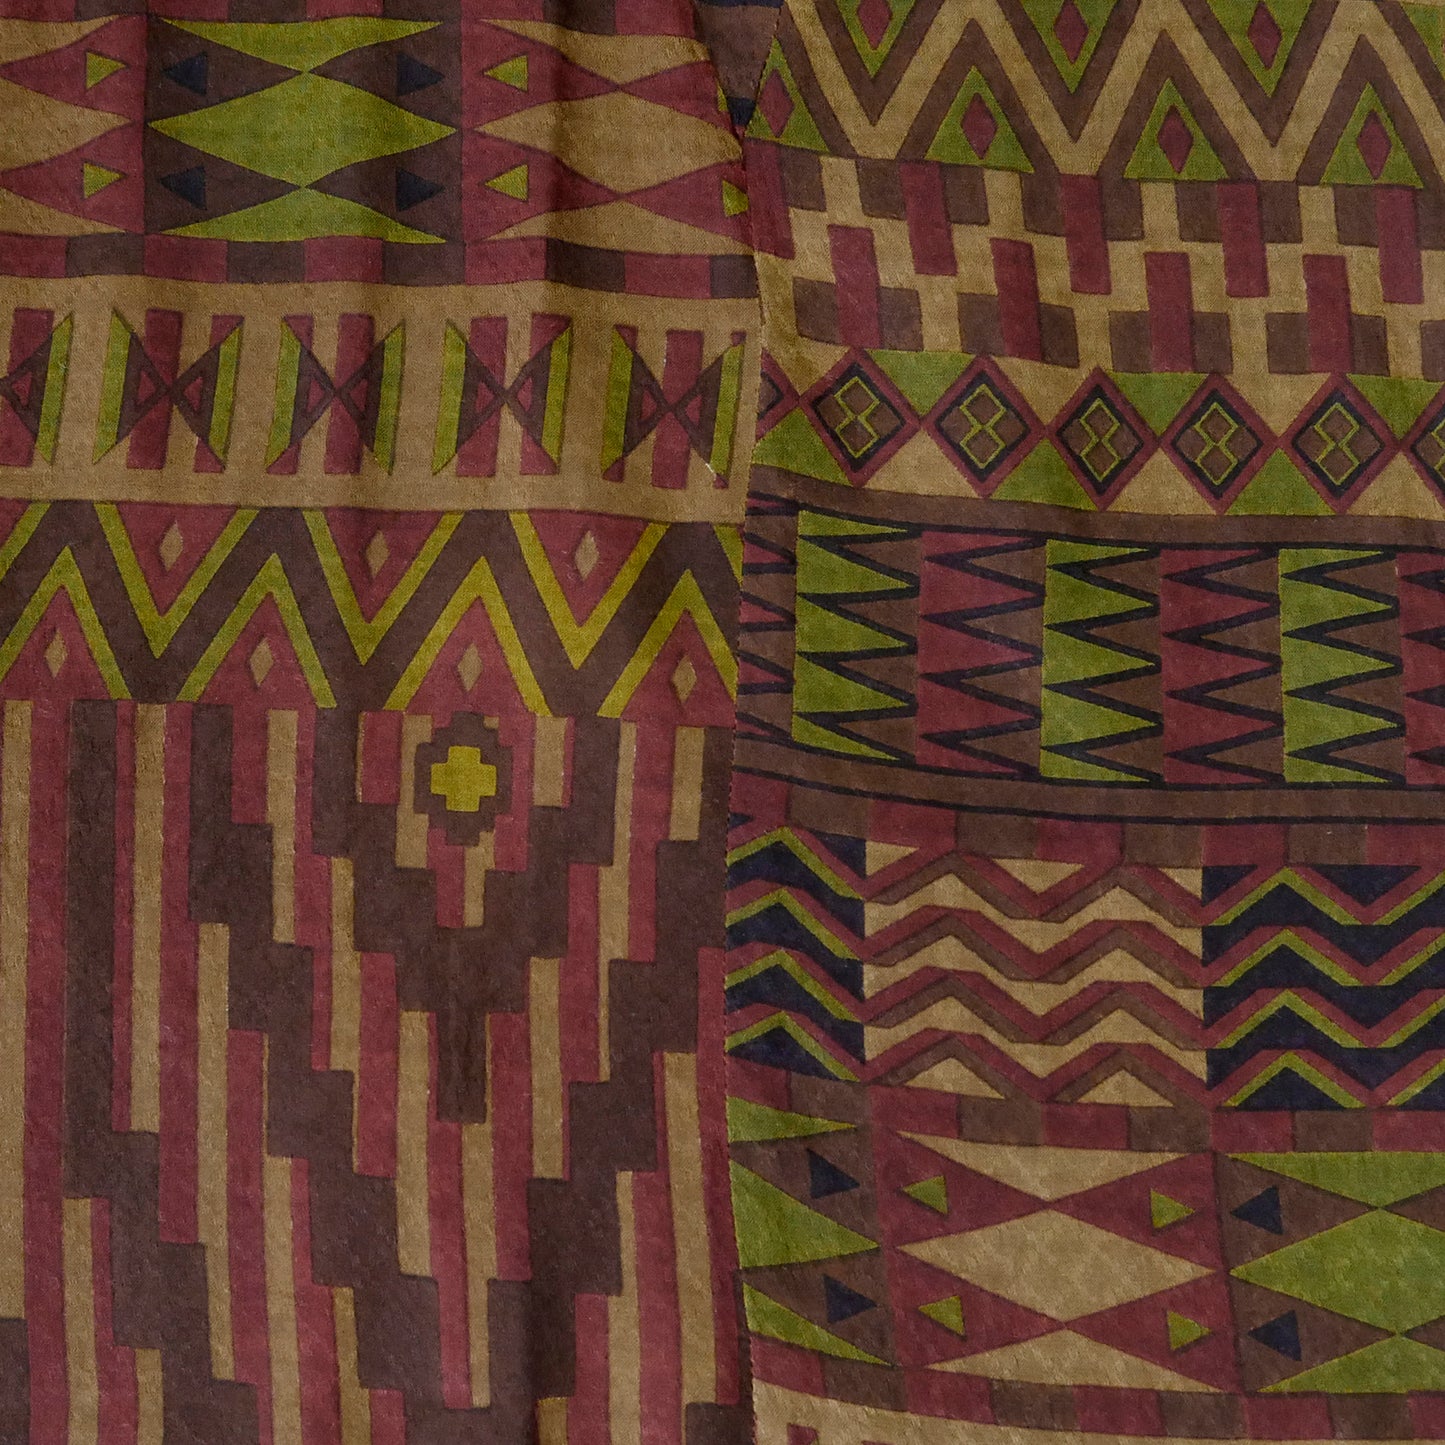 Прямое платье с африканским принтом из жаккарда Rayon